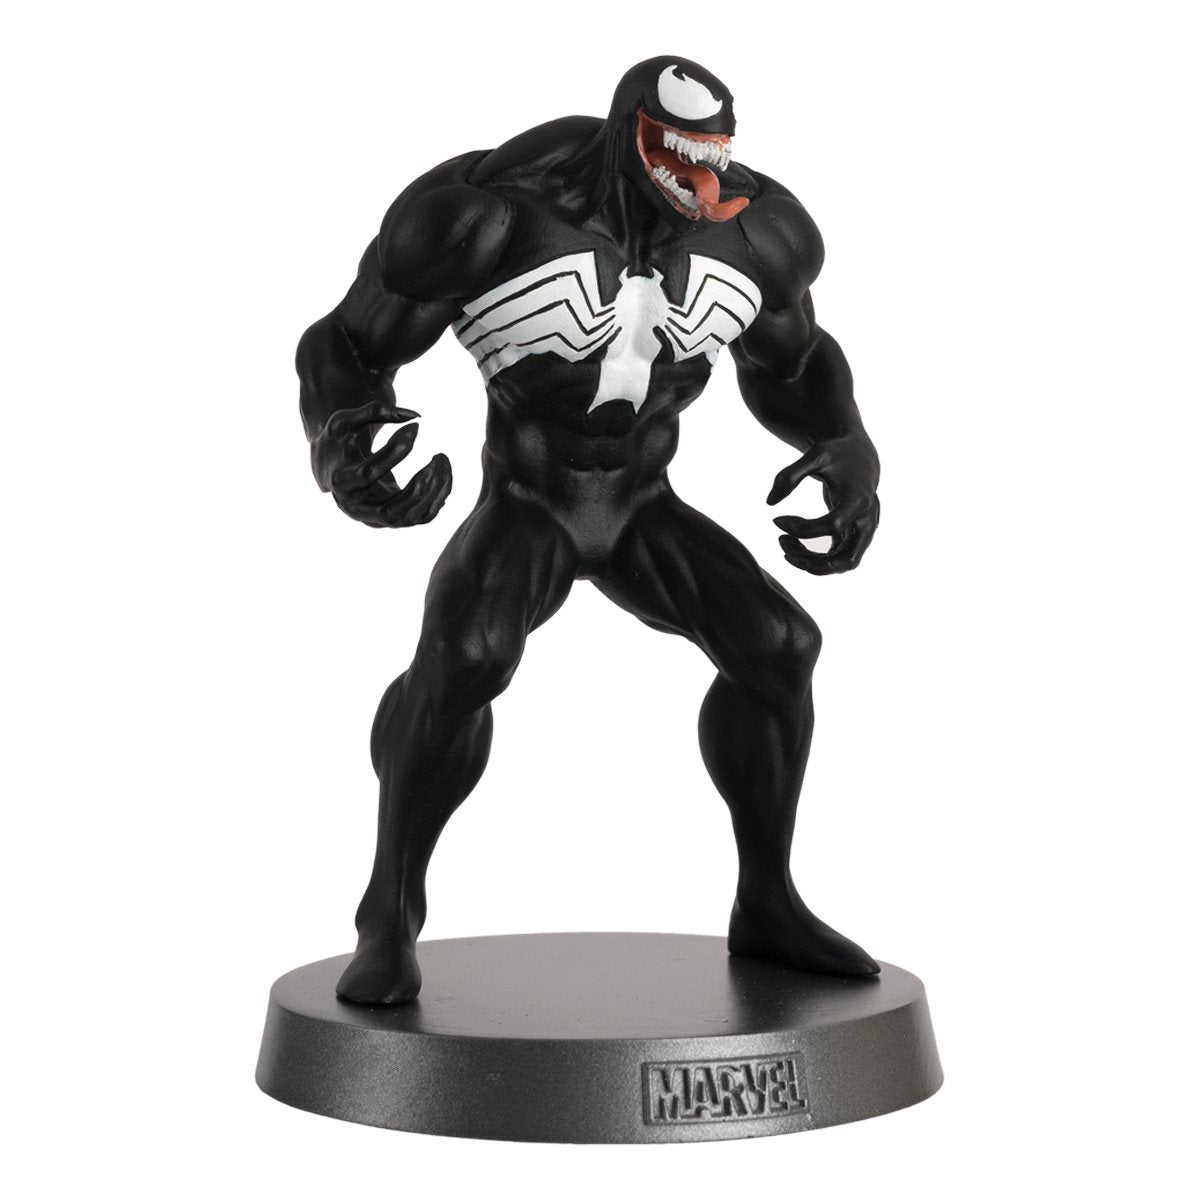 Marvel - Venom Heavyweights Die-Cast Figurine